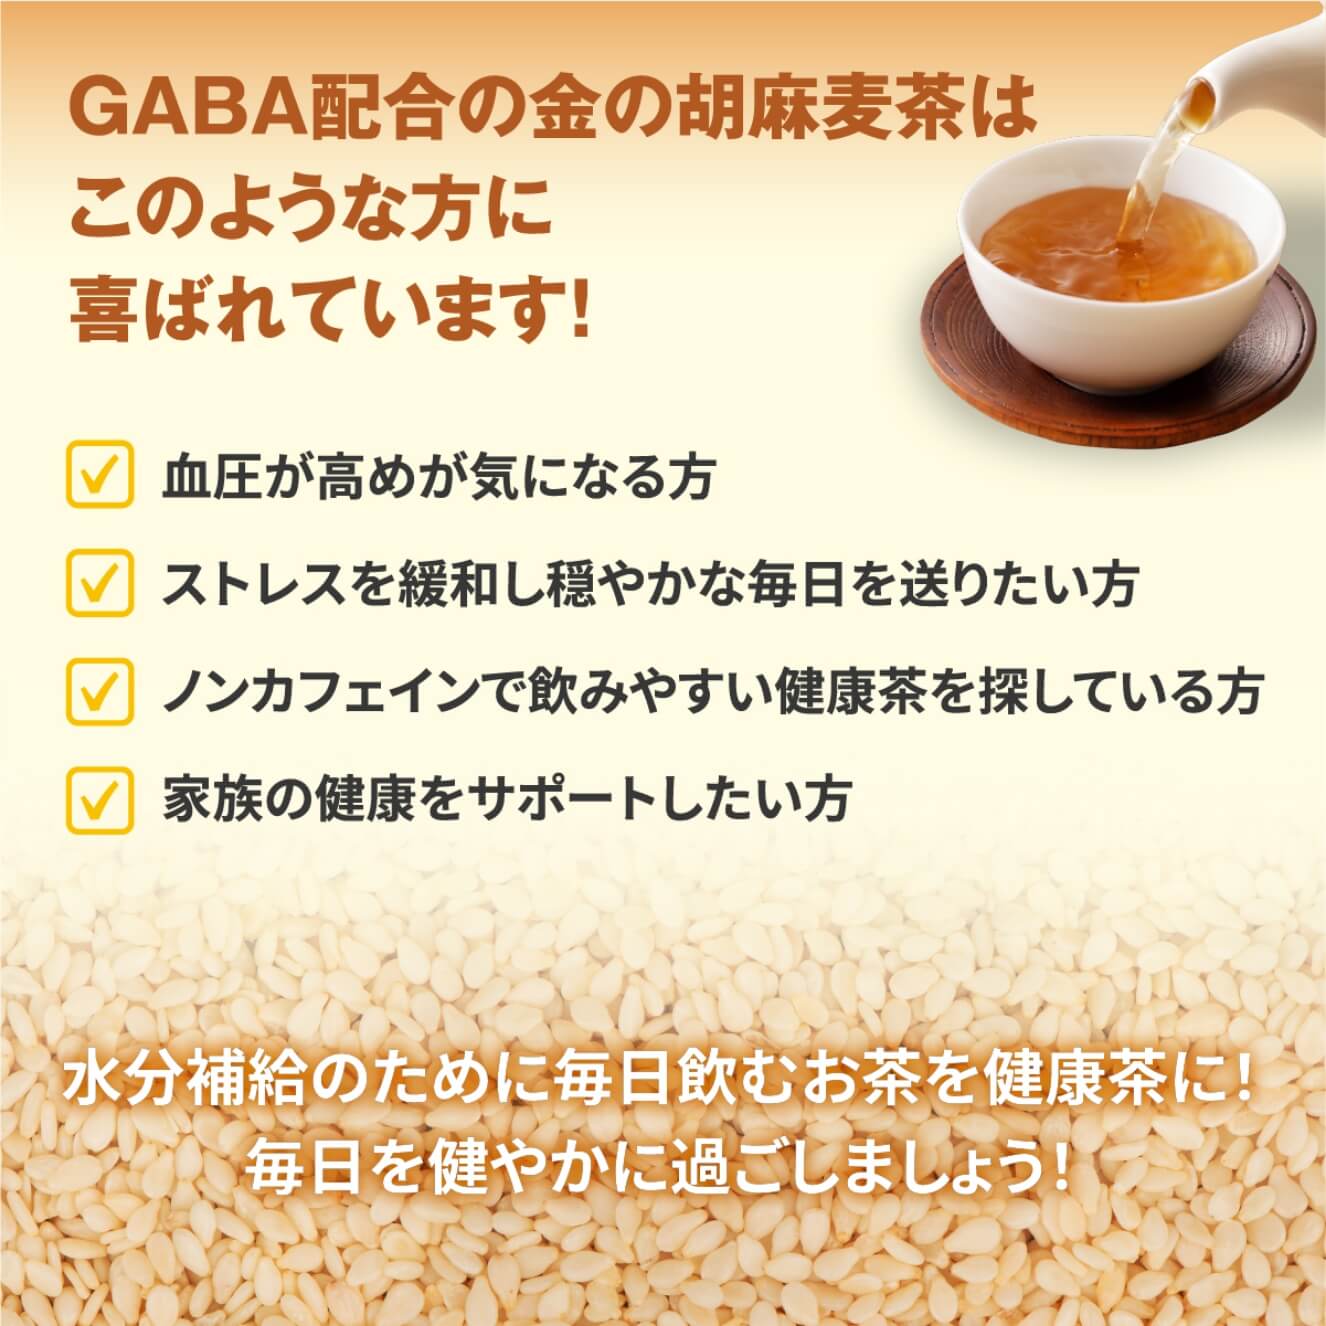 GABA配合の金の胡麻麦茶はこのような方に喜ばれています